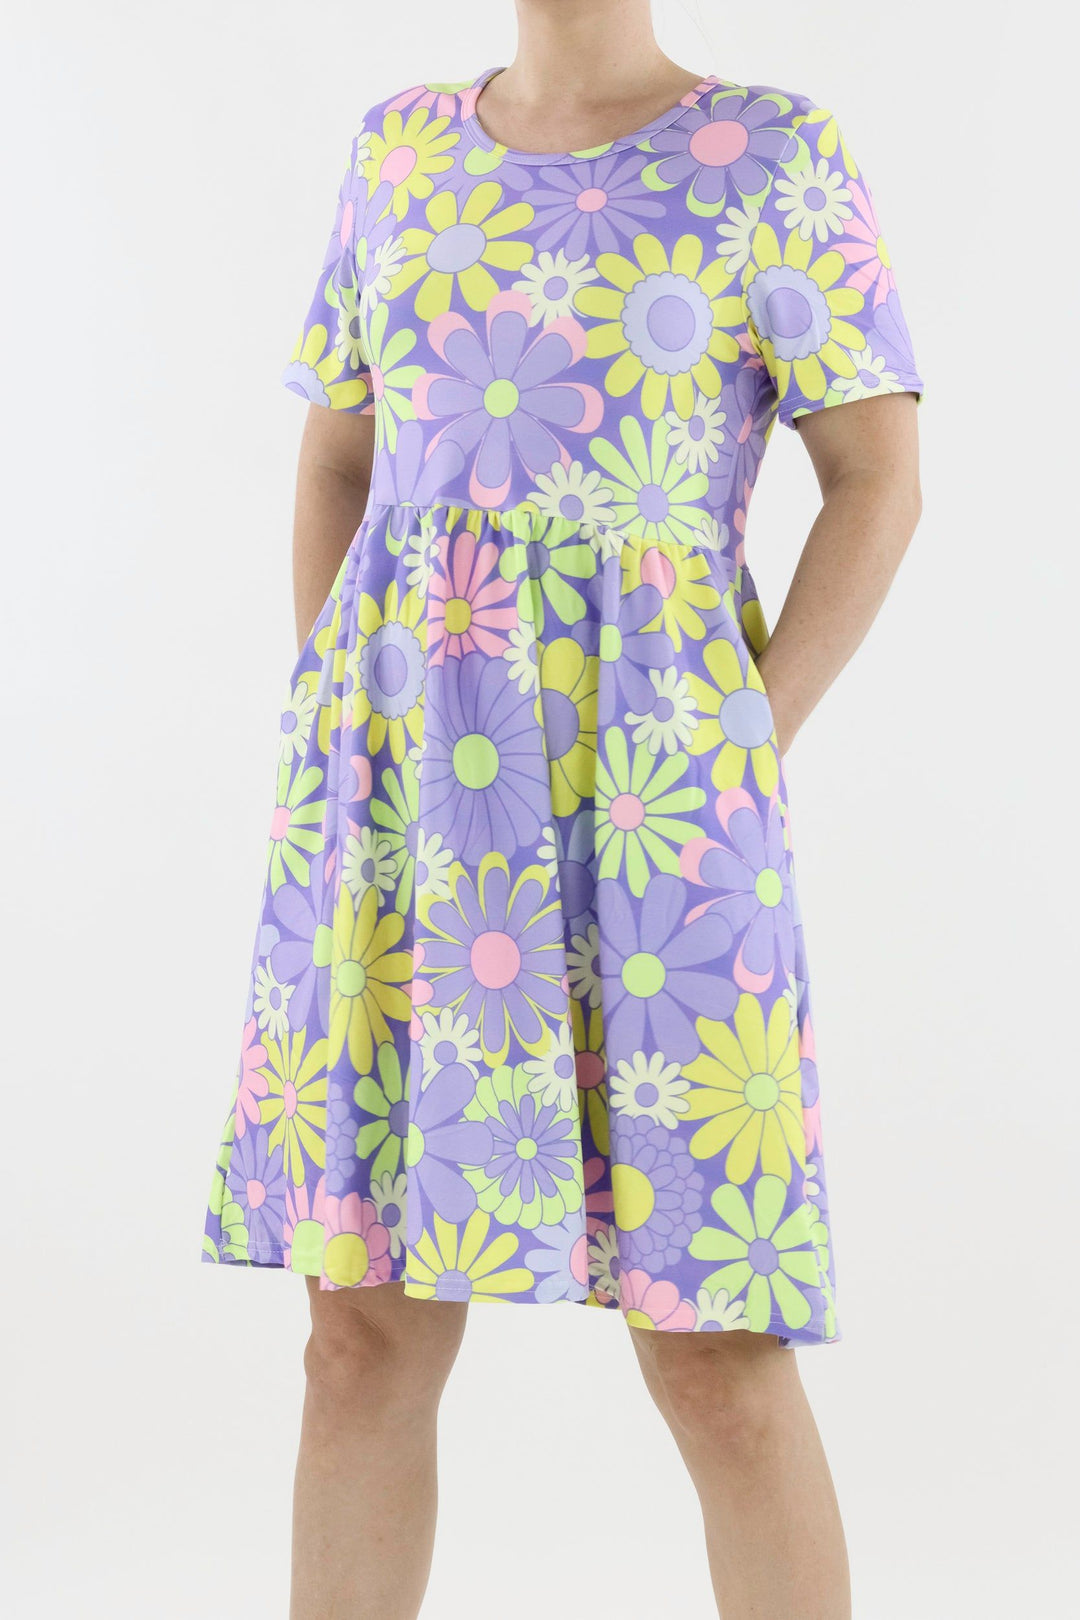 Candy Flower - Short Sleeve Skater Dress - Knee Length - Side Pockets Knee Length Skater Dress Pawlie   